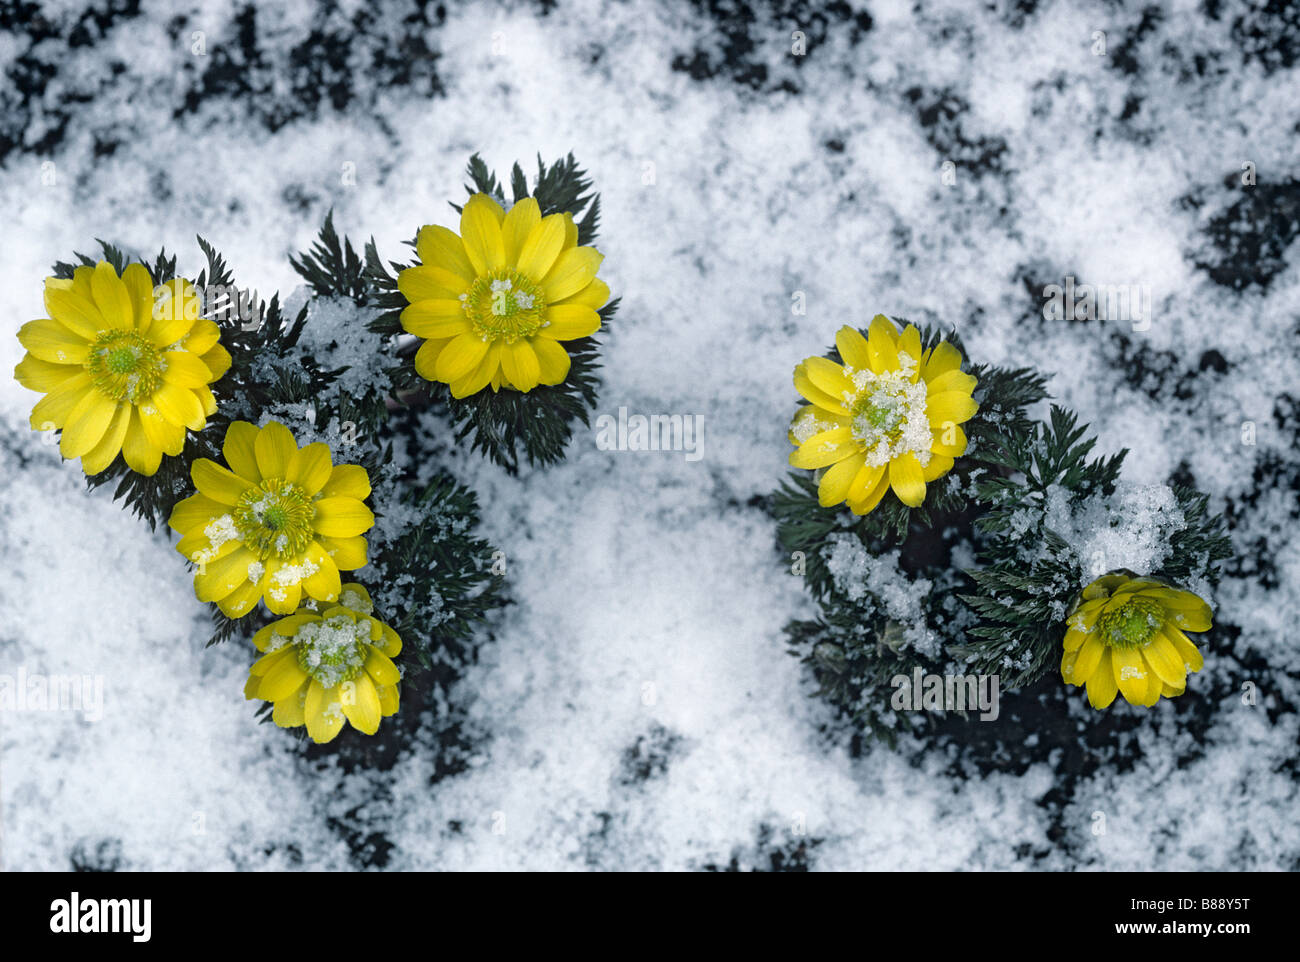 Adonis amurensis fukujakai with snow Stock Photo